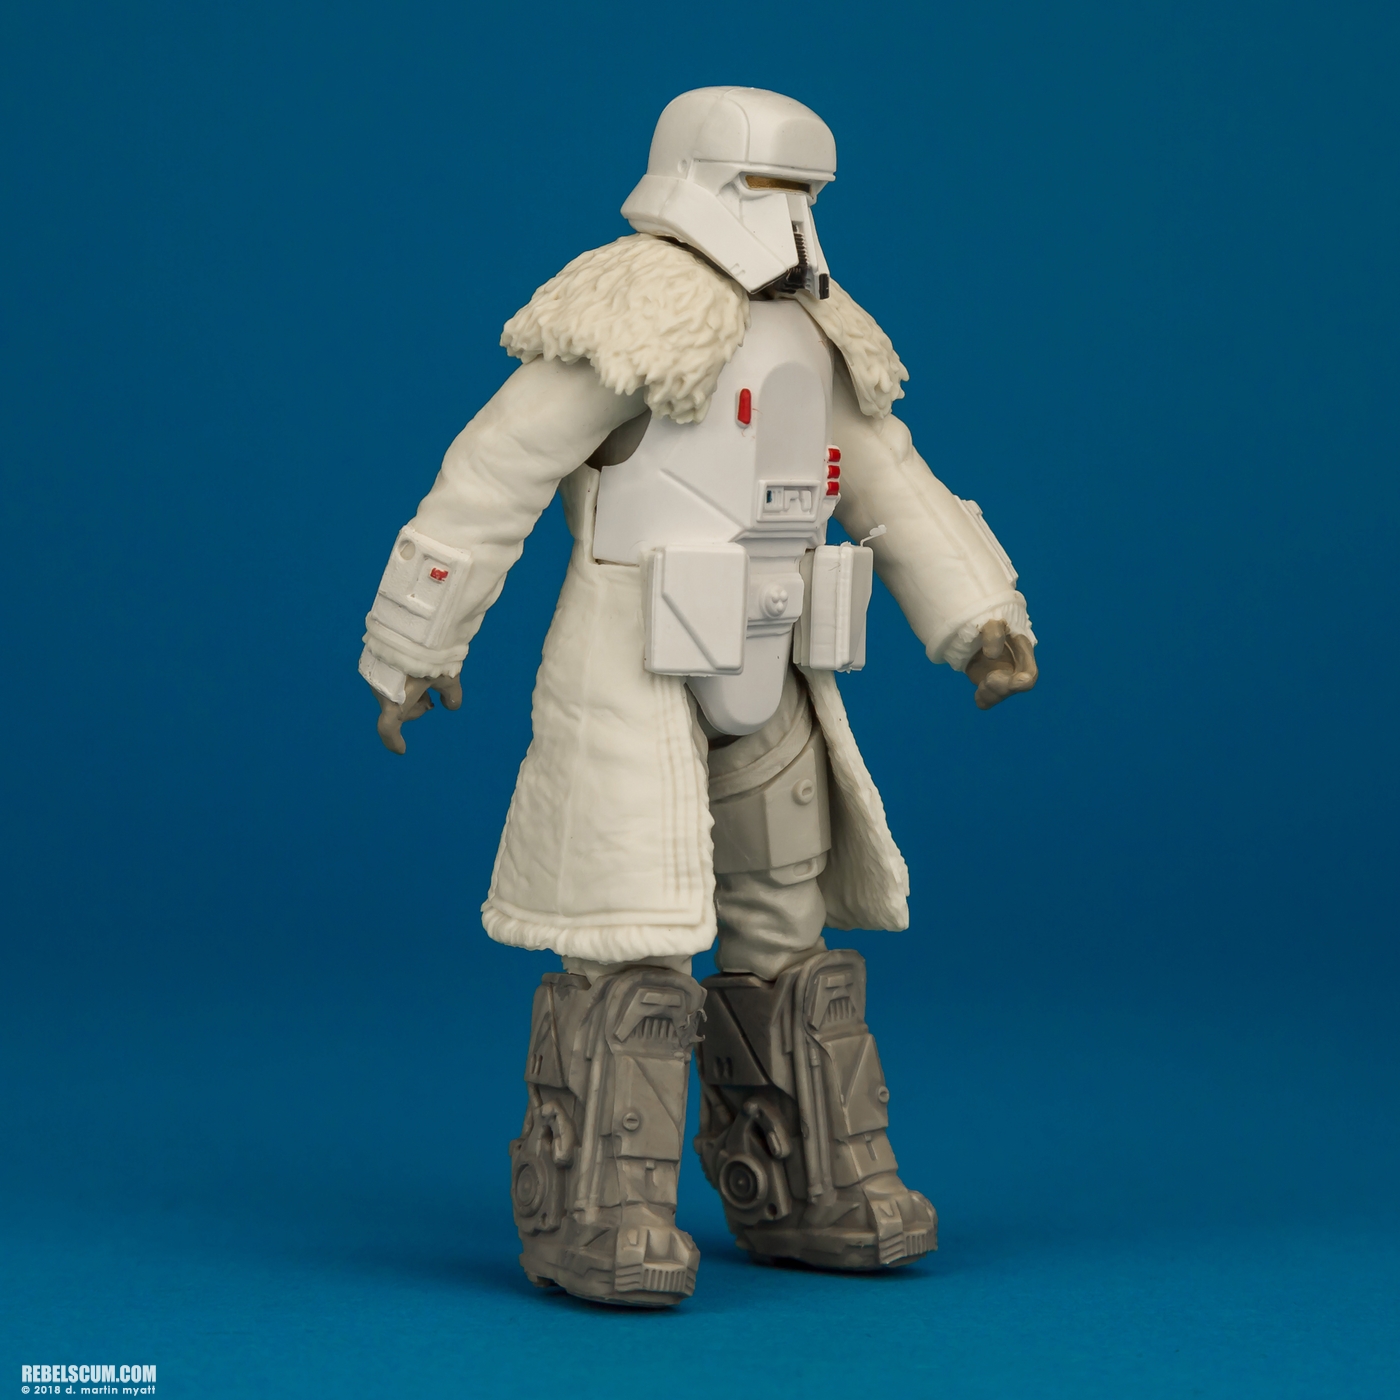 Range-Trooper-Solo-Star-Wars-Universe-ForceLink-2-Hasbro-002.jpg